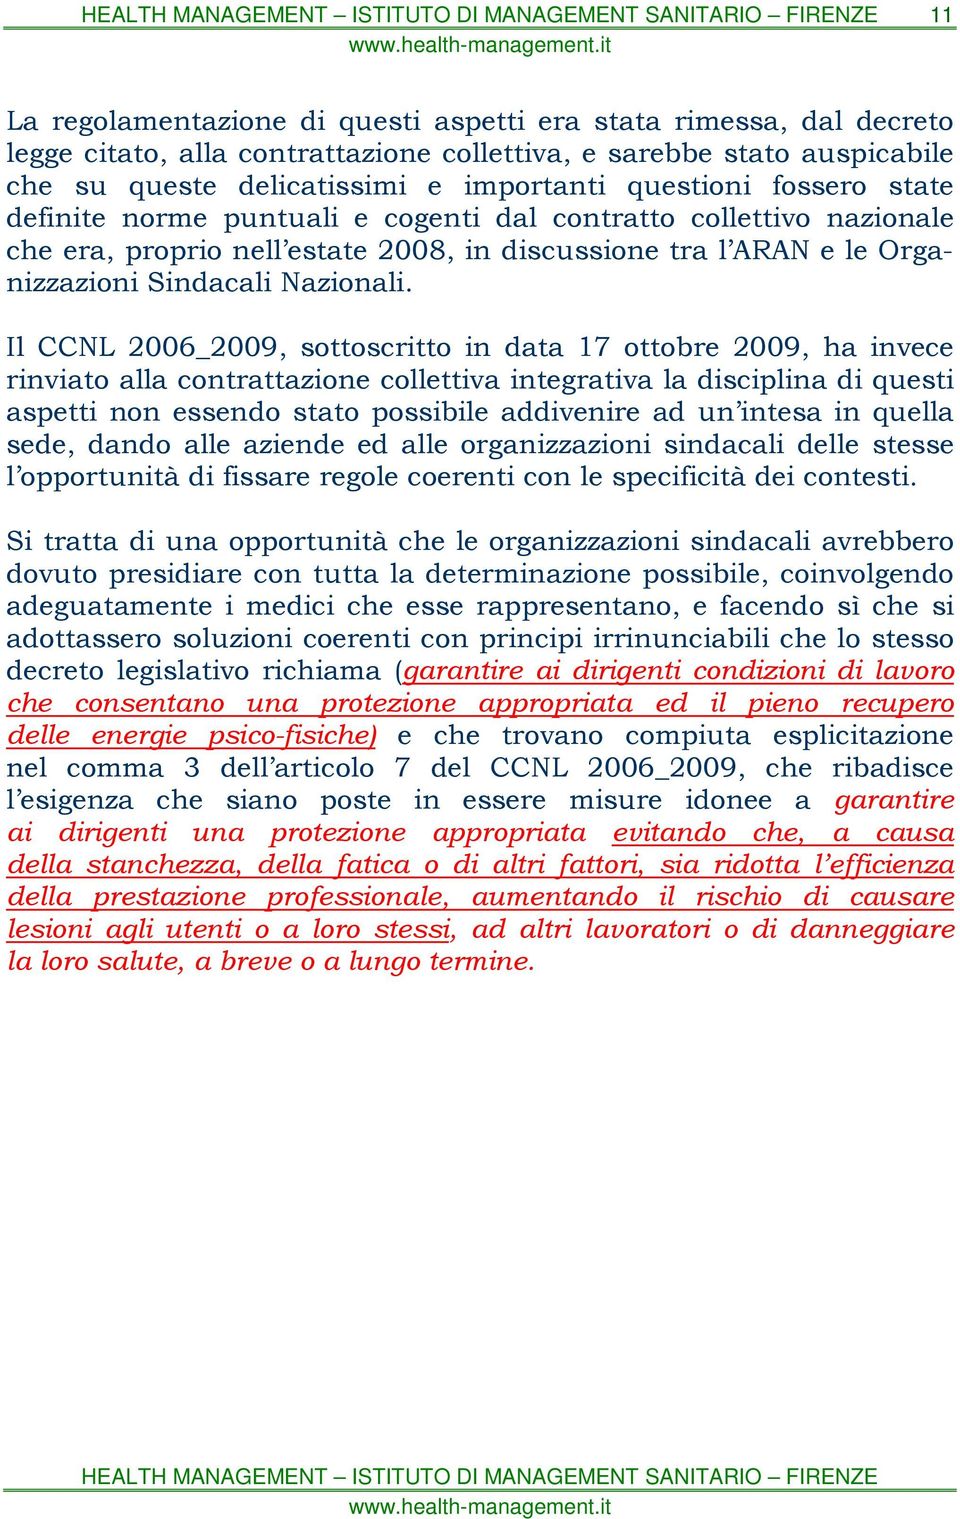 Il CCNL 2006_2009, sottoscritto in data 17 ottobre 2009, ha invece rinviato alla contrattazione collettiva integrativa la disciplina di questi aspetti non essendo stato possibile addivenire ad un